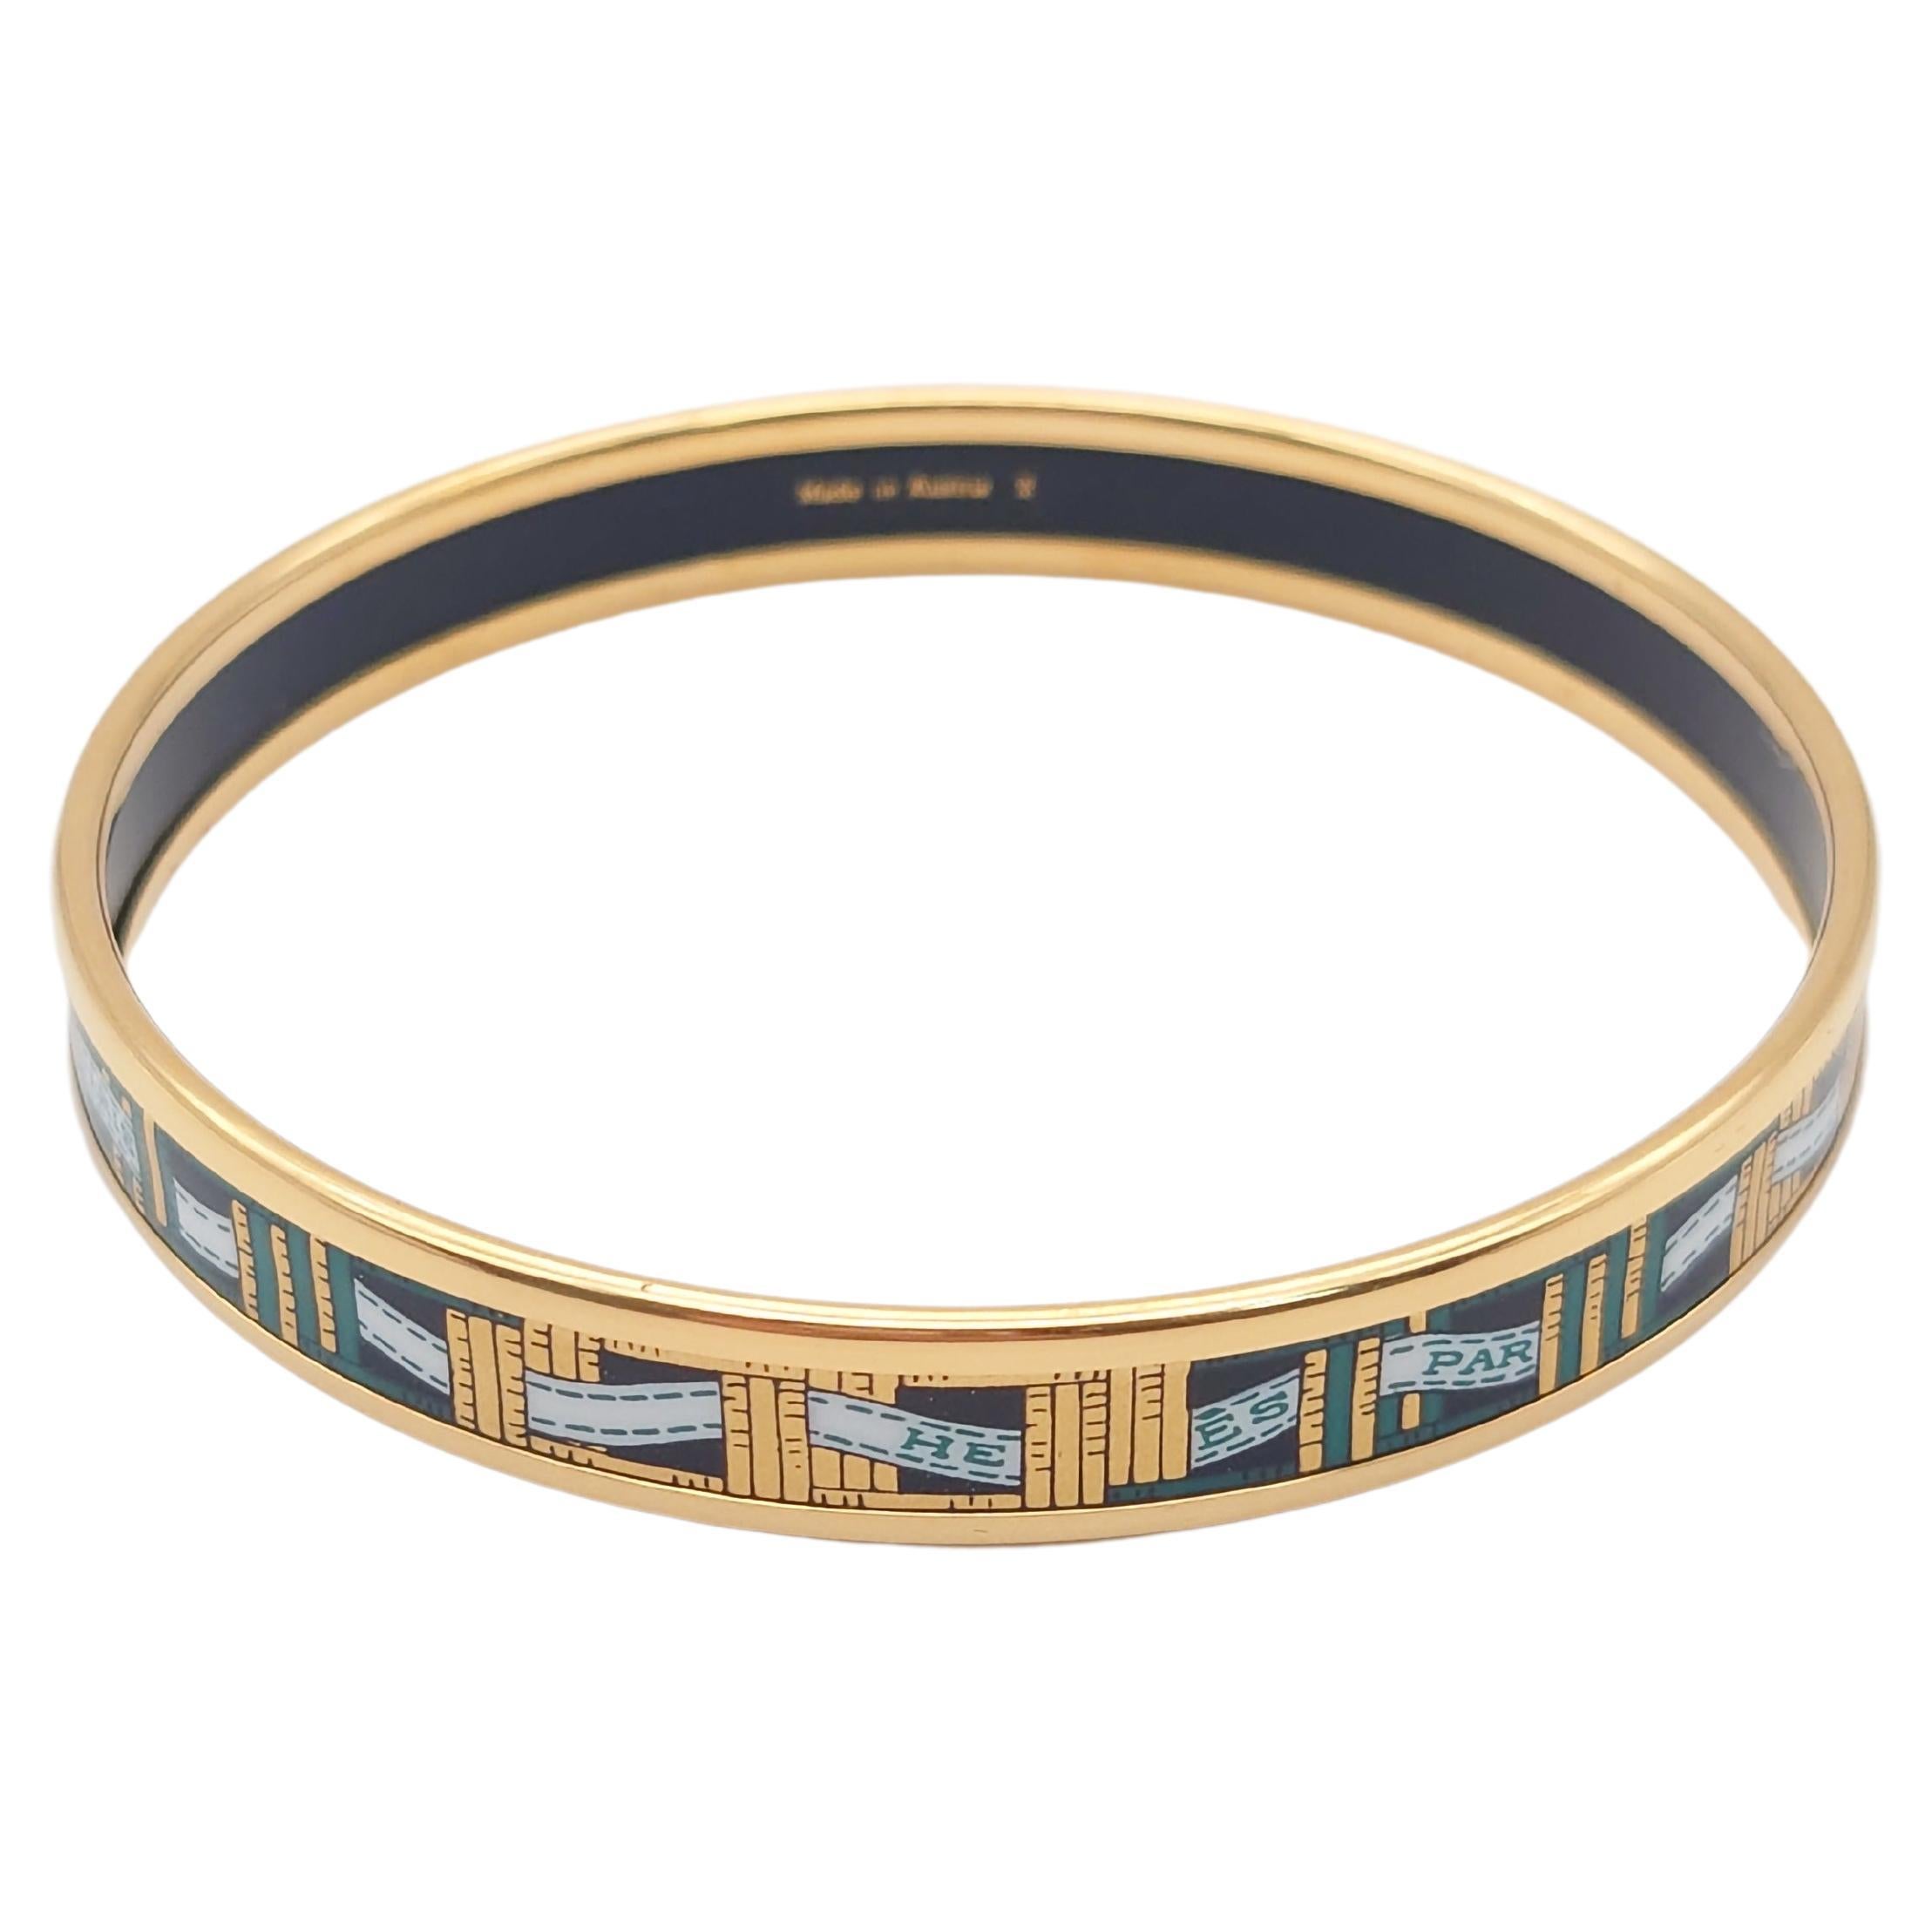 Authentic Hermes Bracelet Vintage Enamel Bangle ”Band” For Sale